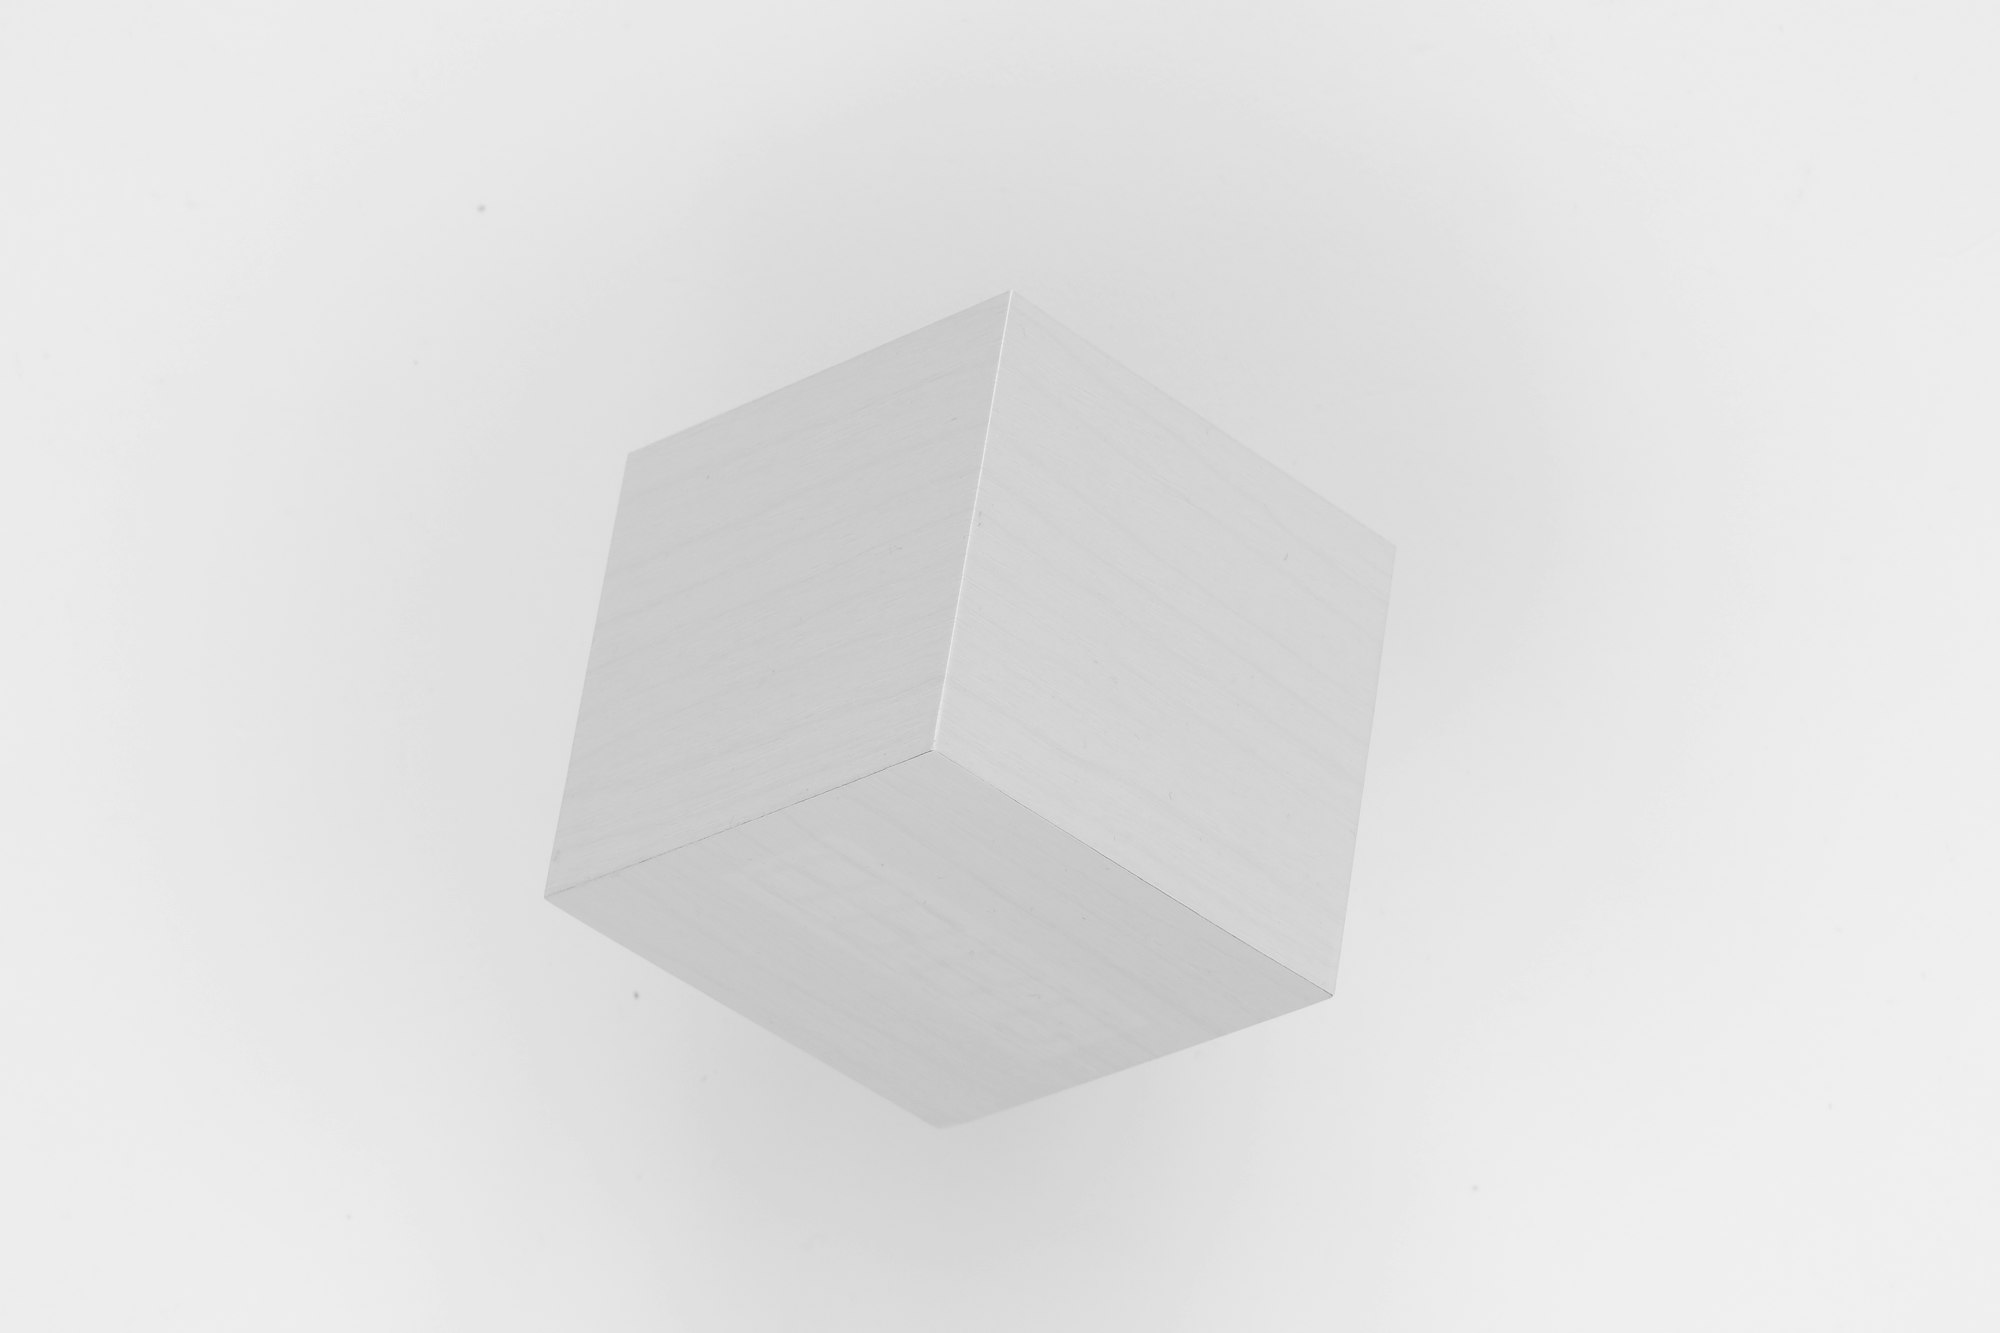 White cube. Fuji XT-2 - Fujinon 16-80 at 74mm - f.13 - 1/3 sec. - ISO 200 - exp +2 - Tripod Manfrotto